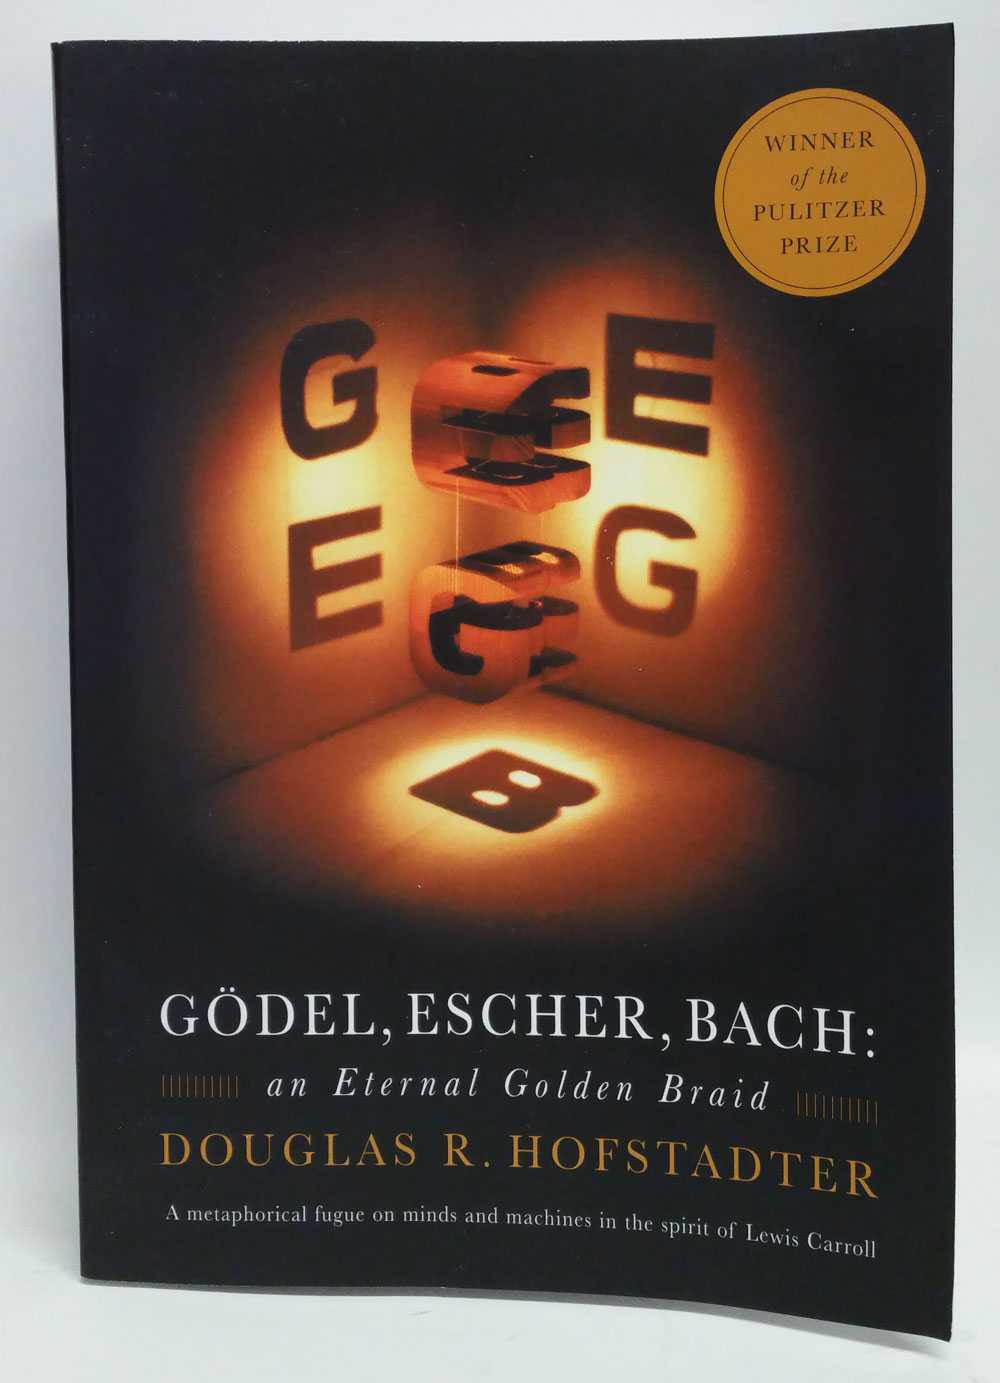 Douglas R. Hofstadter - Godel, Escher, Bach: An Eternal Golden Braid